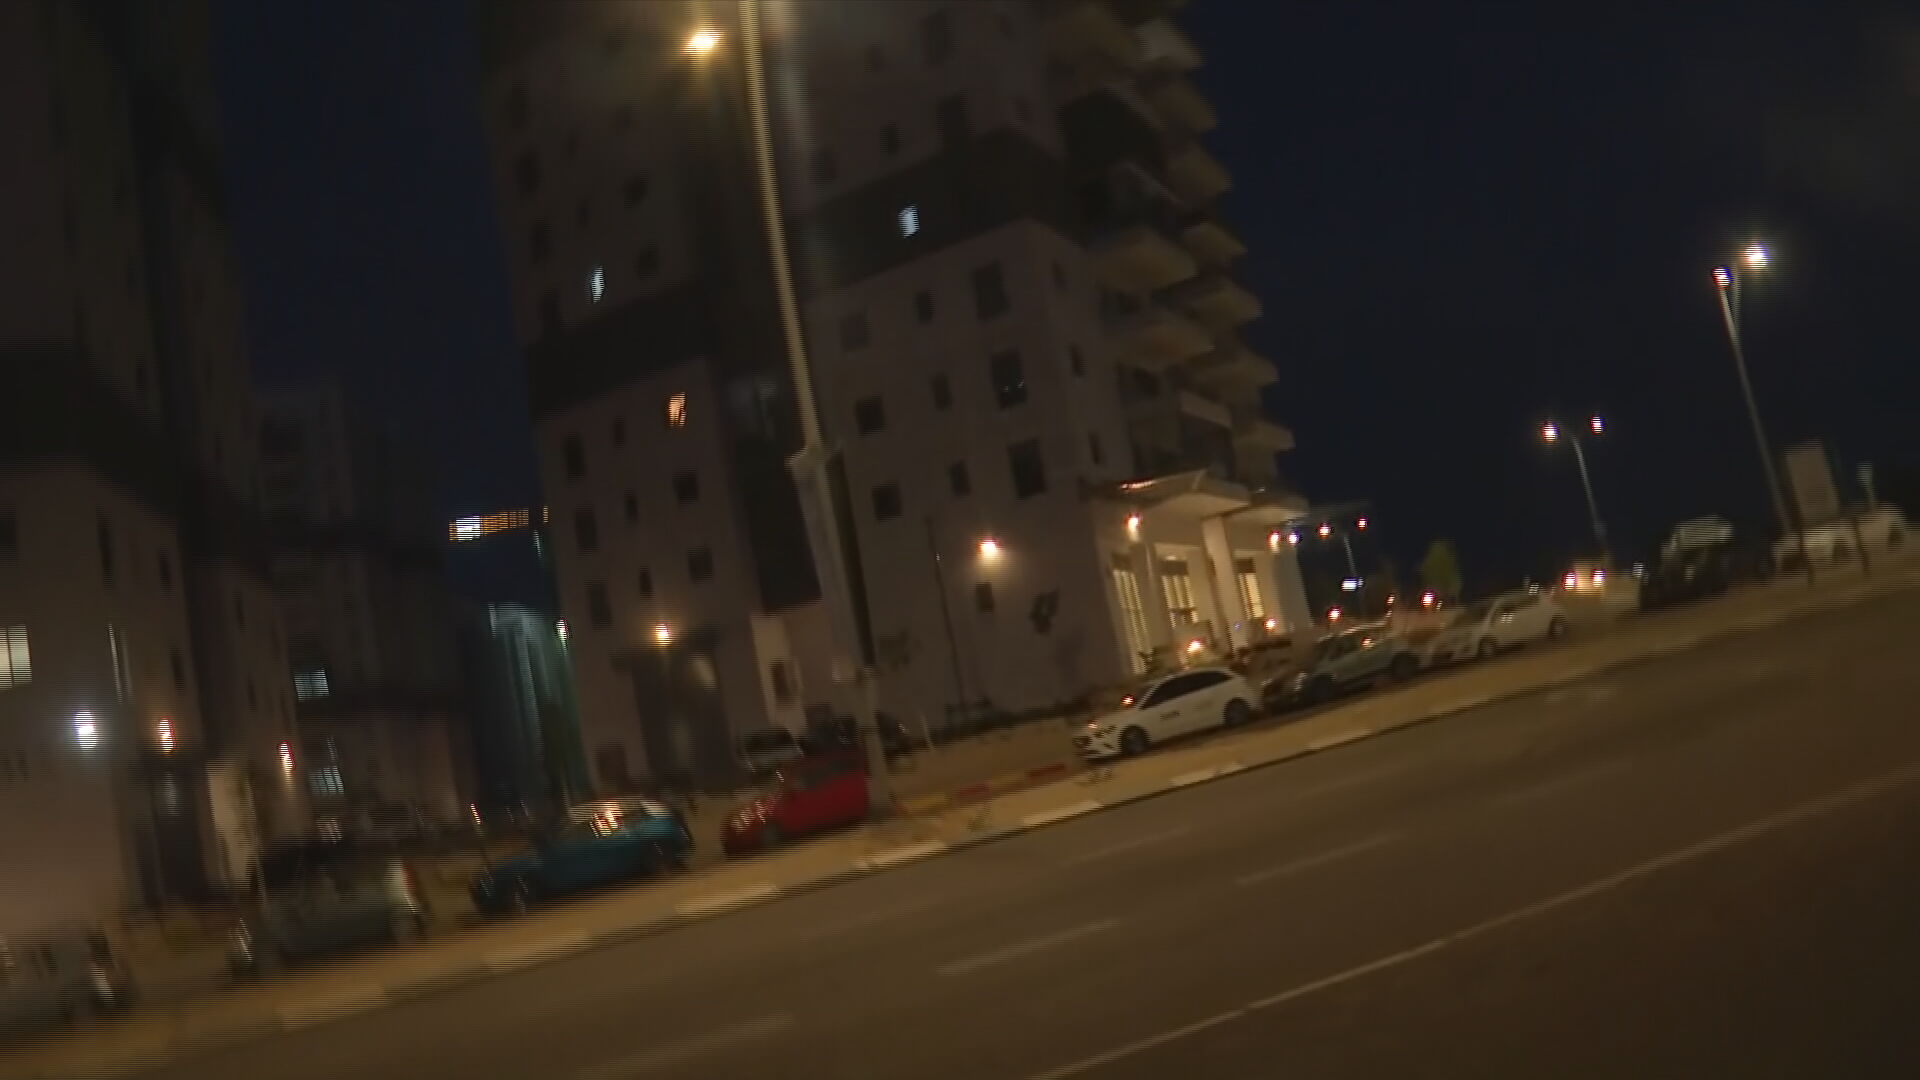 Βίντεο: Απόκρουση δύο ρουκετών μπροστά στην κάμερα της ΕΡΤ κατά τη διάρκεια ζωντανής σύνδεσης με το Ισραήλ